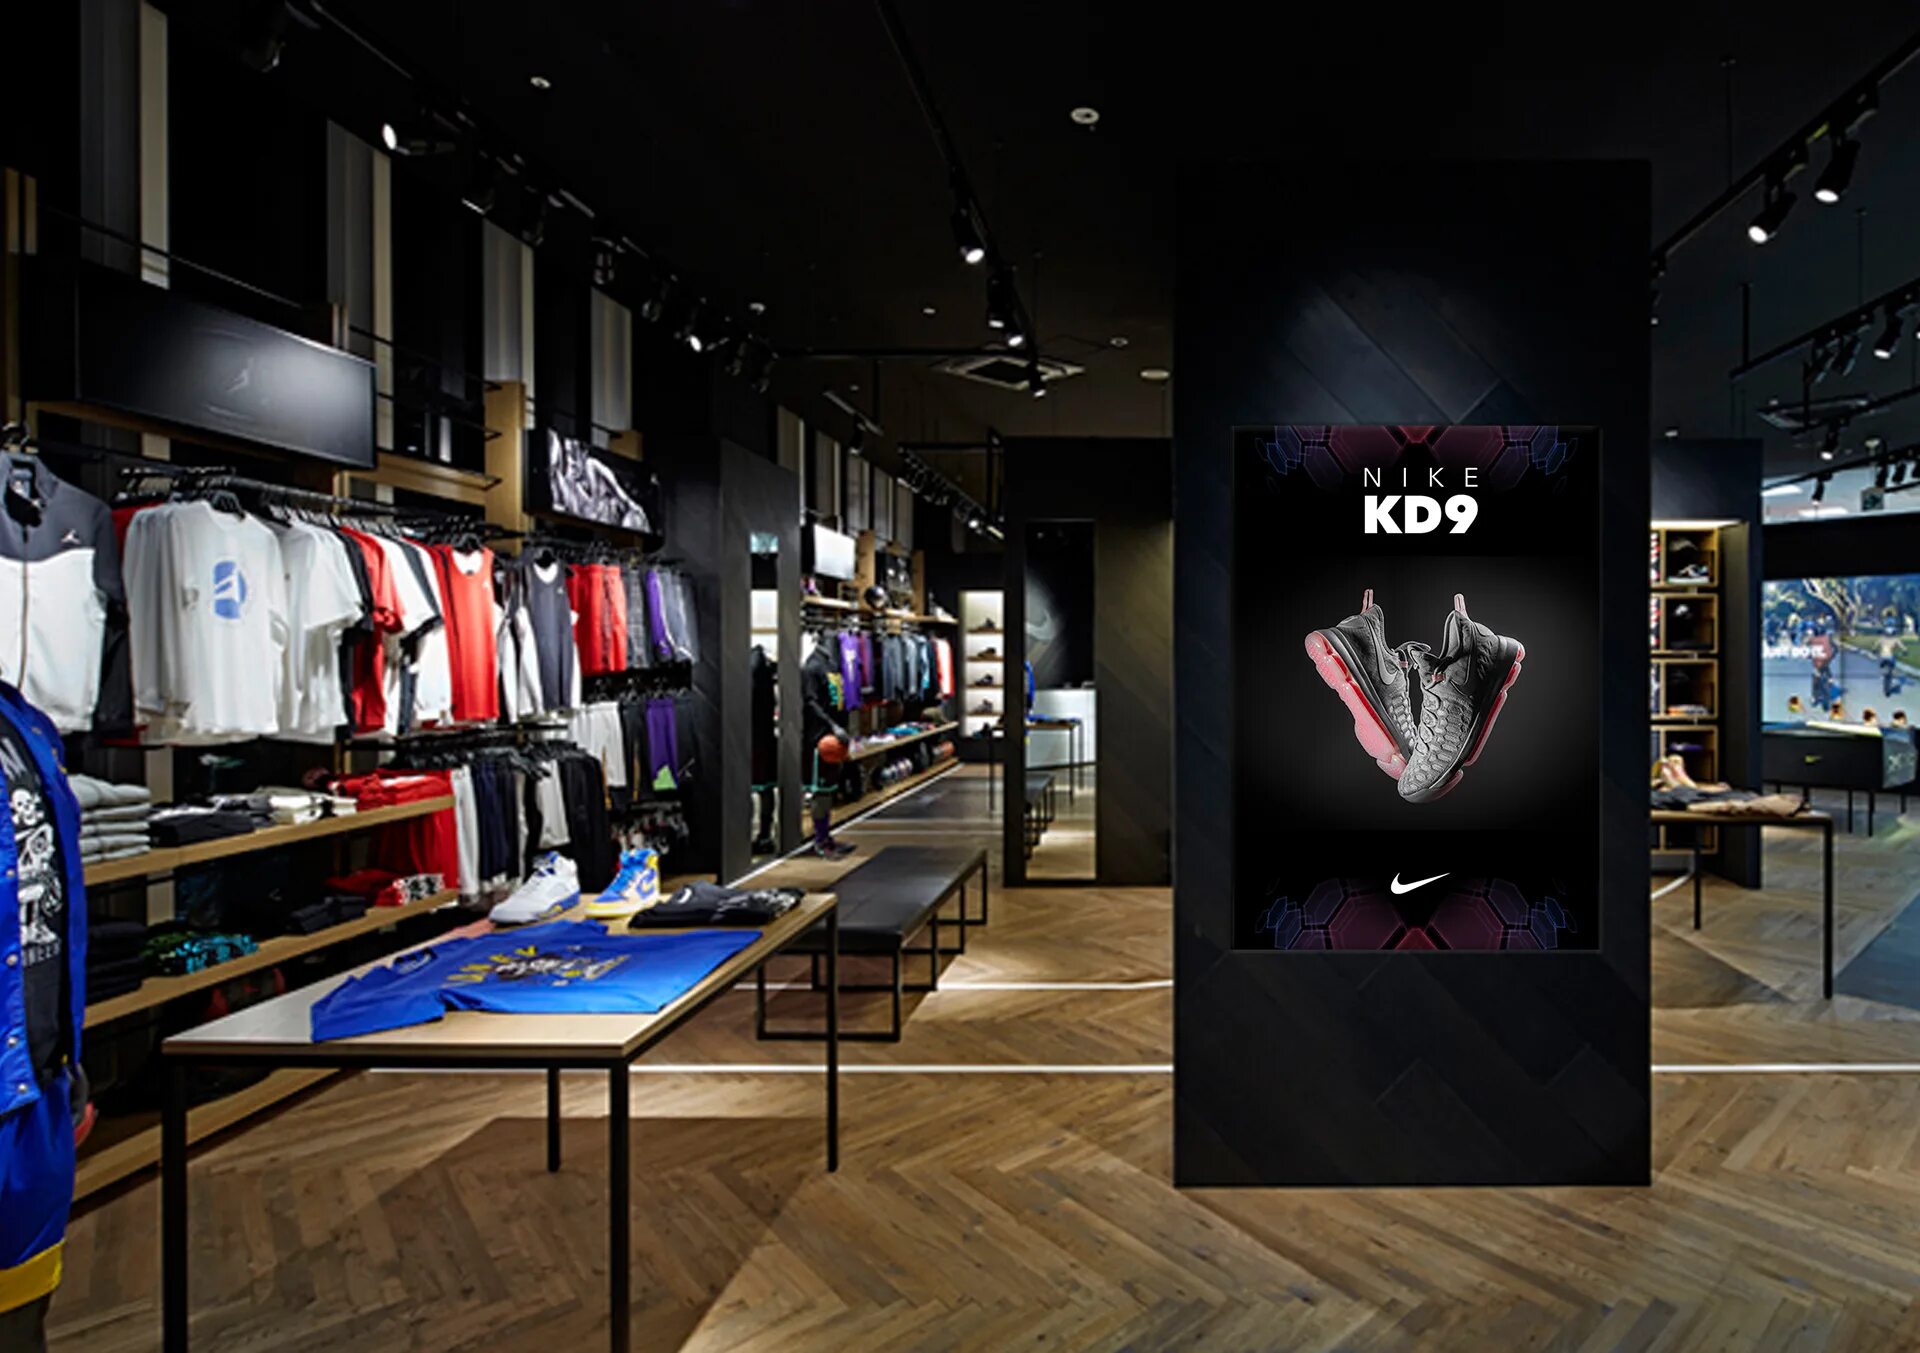 Nike Store. Фирменный магазин найк. Nike Jordan Boutique. Интерьер магазина одежды. Спортивный магазин спорт товаров